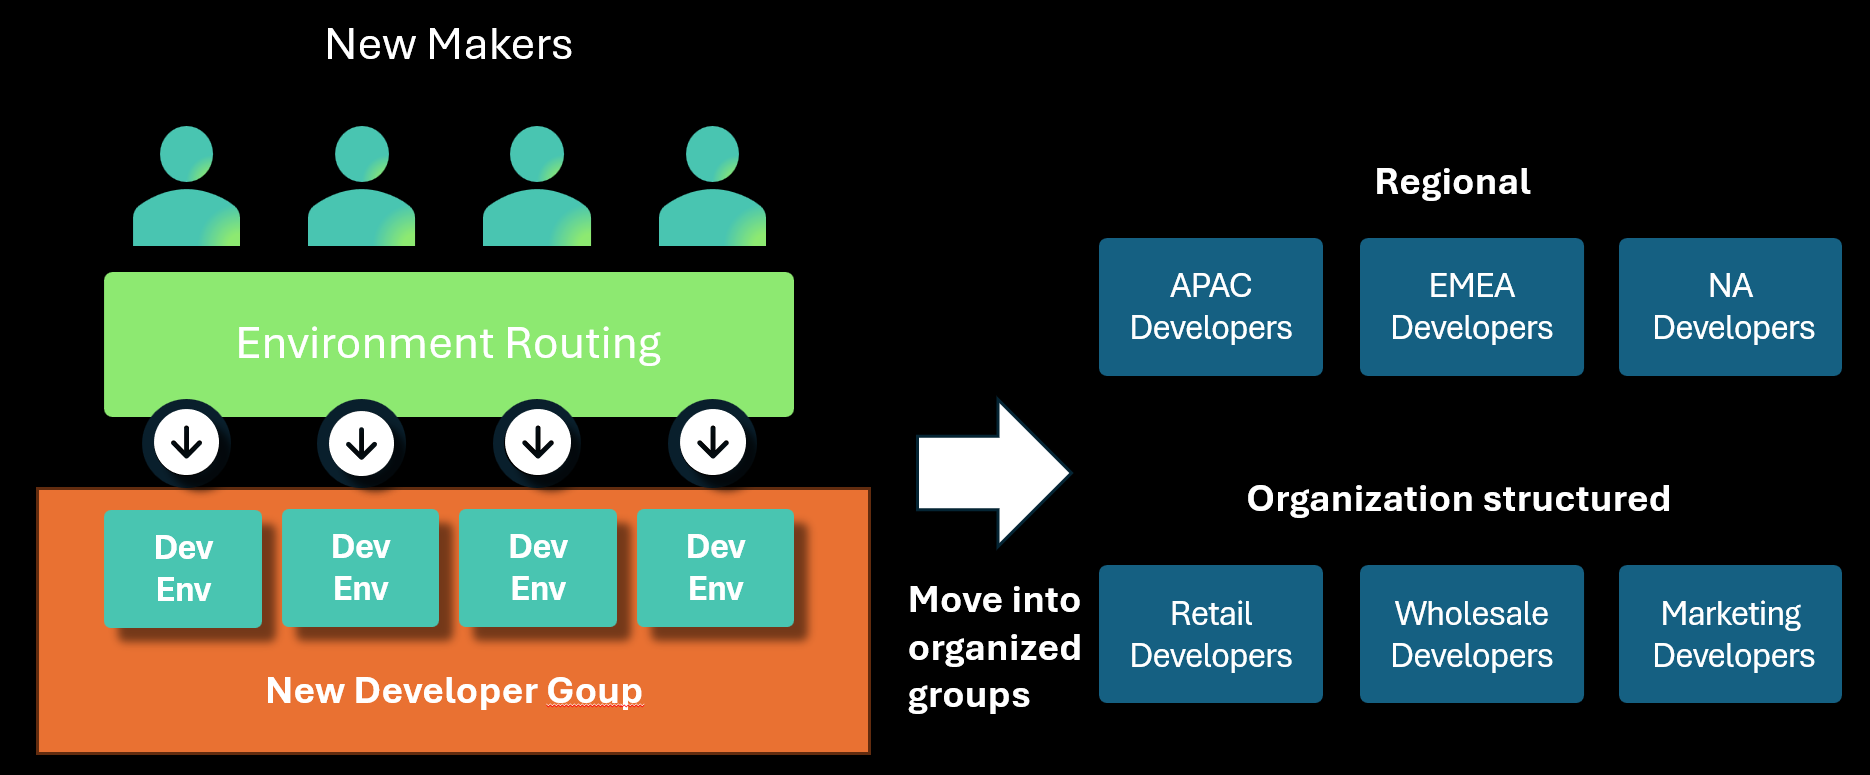 Sơ đồ minh họa định tuyến môi trường tạo môi trường nhà phát triển trong nhóm được chỉ định, sau đó được chuyển sang các nhóm cụ thể hơn về cấu trúc